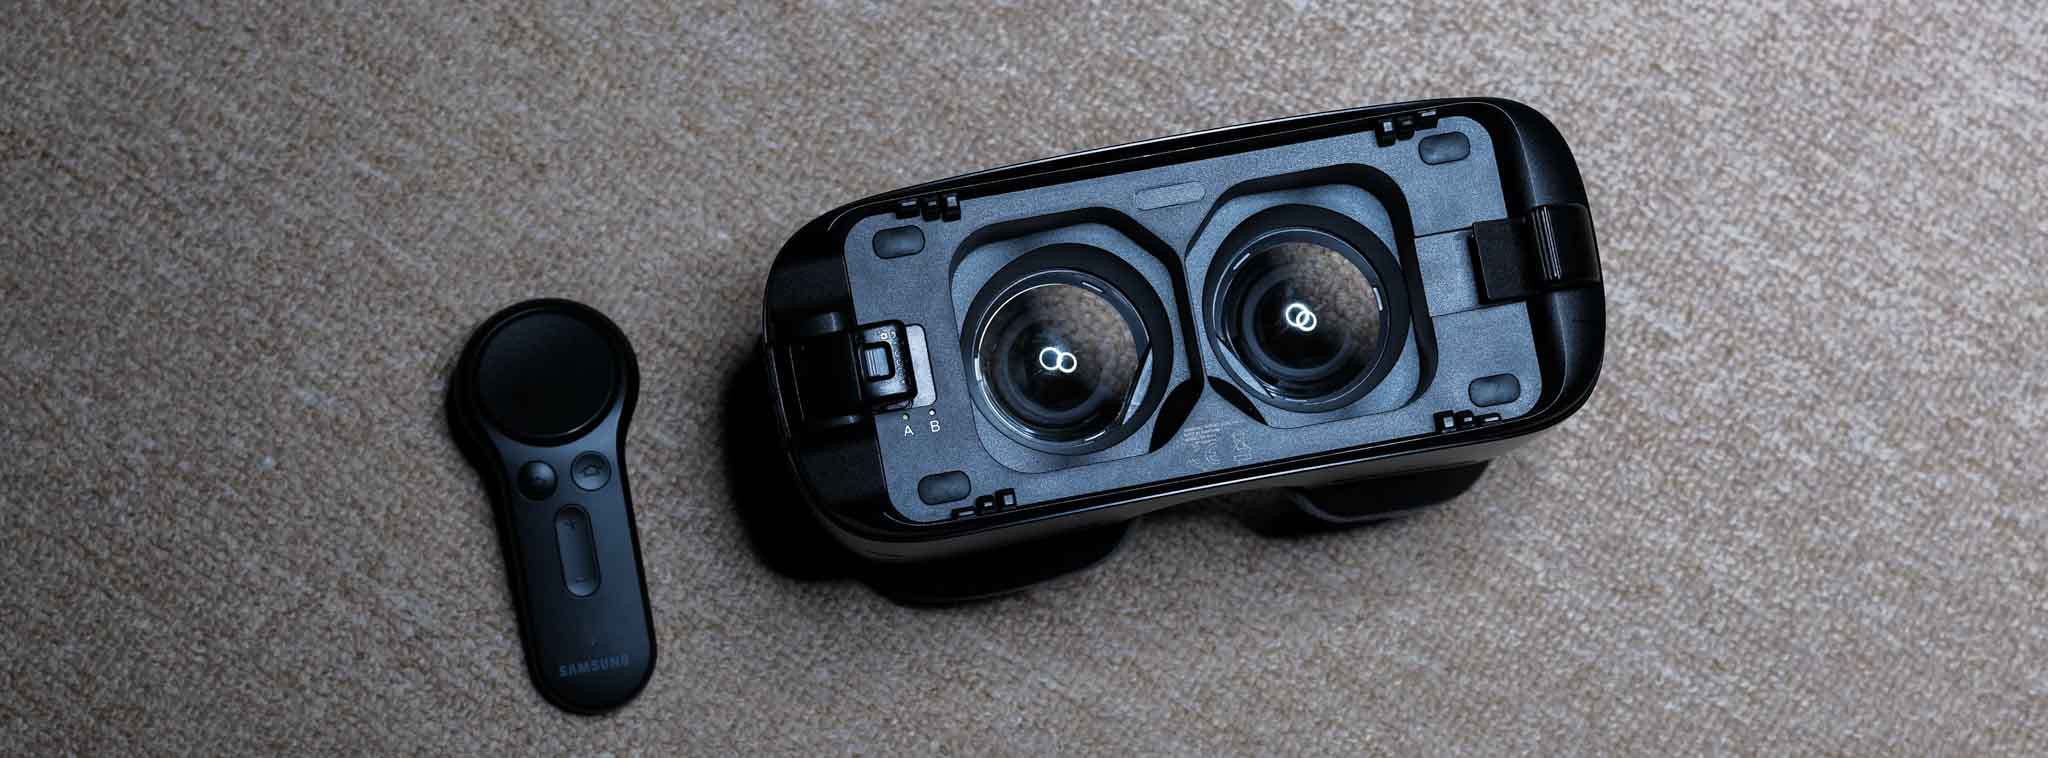 Trải nghiệm Gear VR 2017 giá 2.5 triệu: vẫn là Gear VR từng đi cùng Note 7, có thêm bộ điều khiển